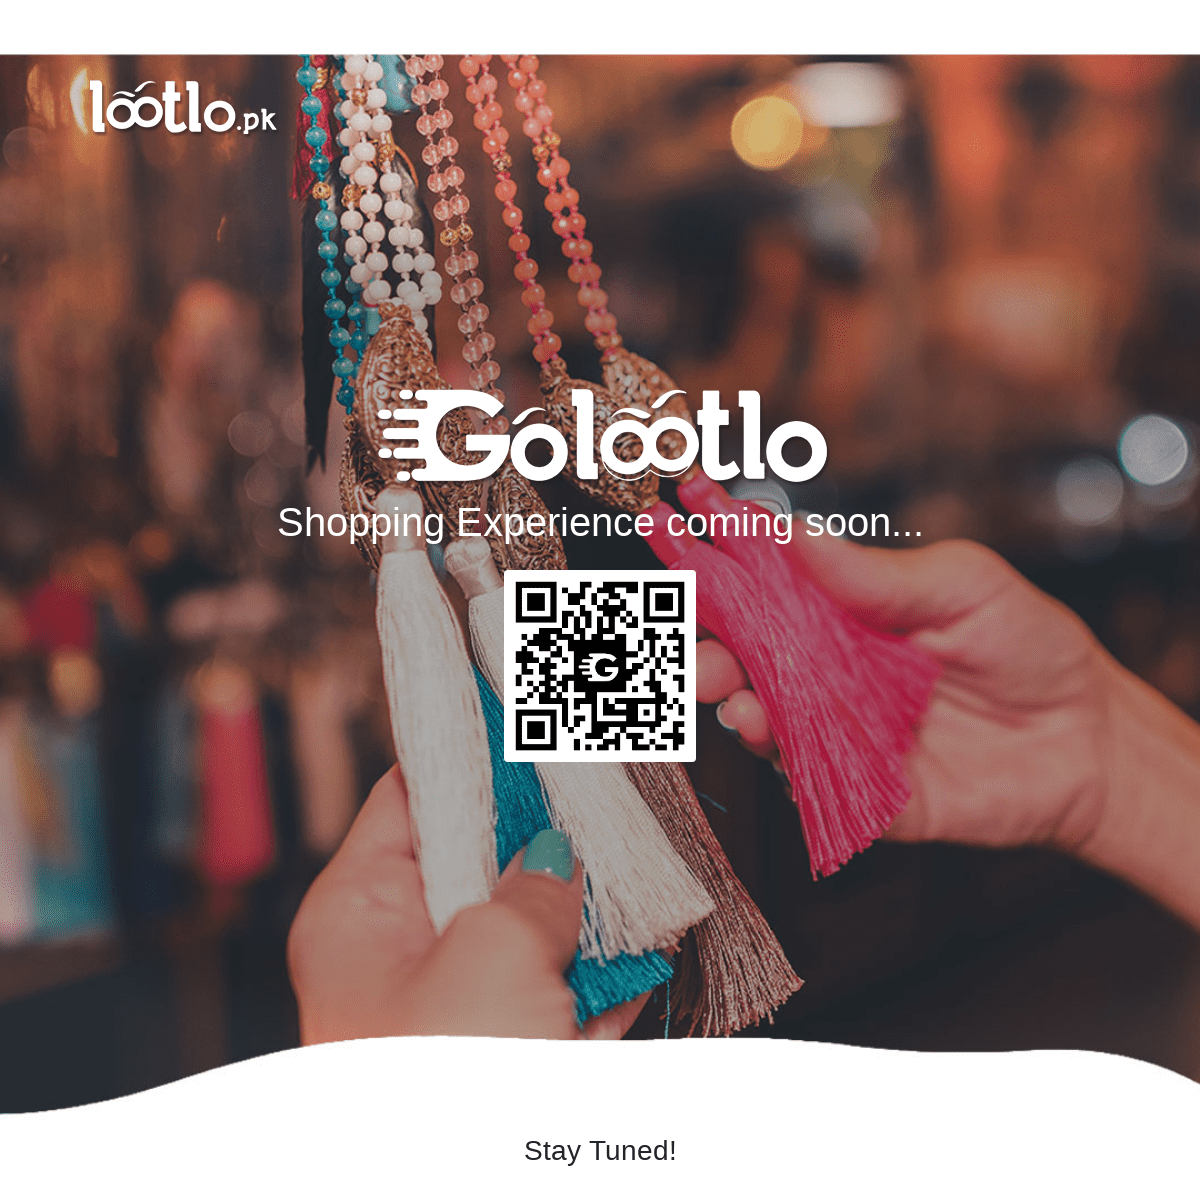 Golootlo shopping | lootlo.pk